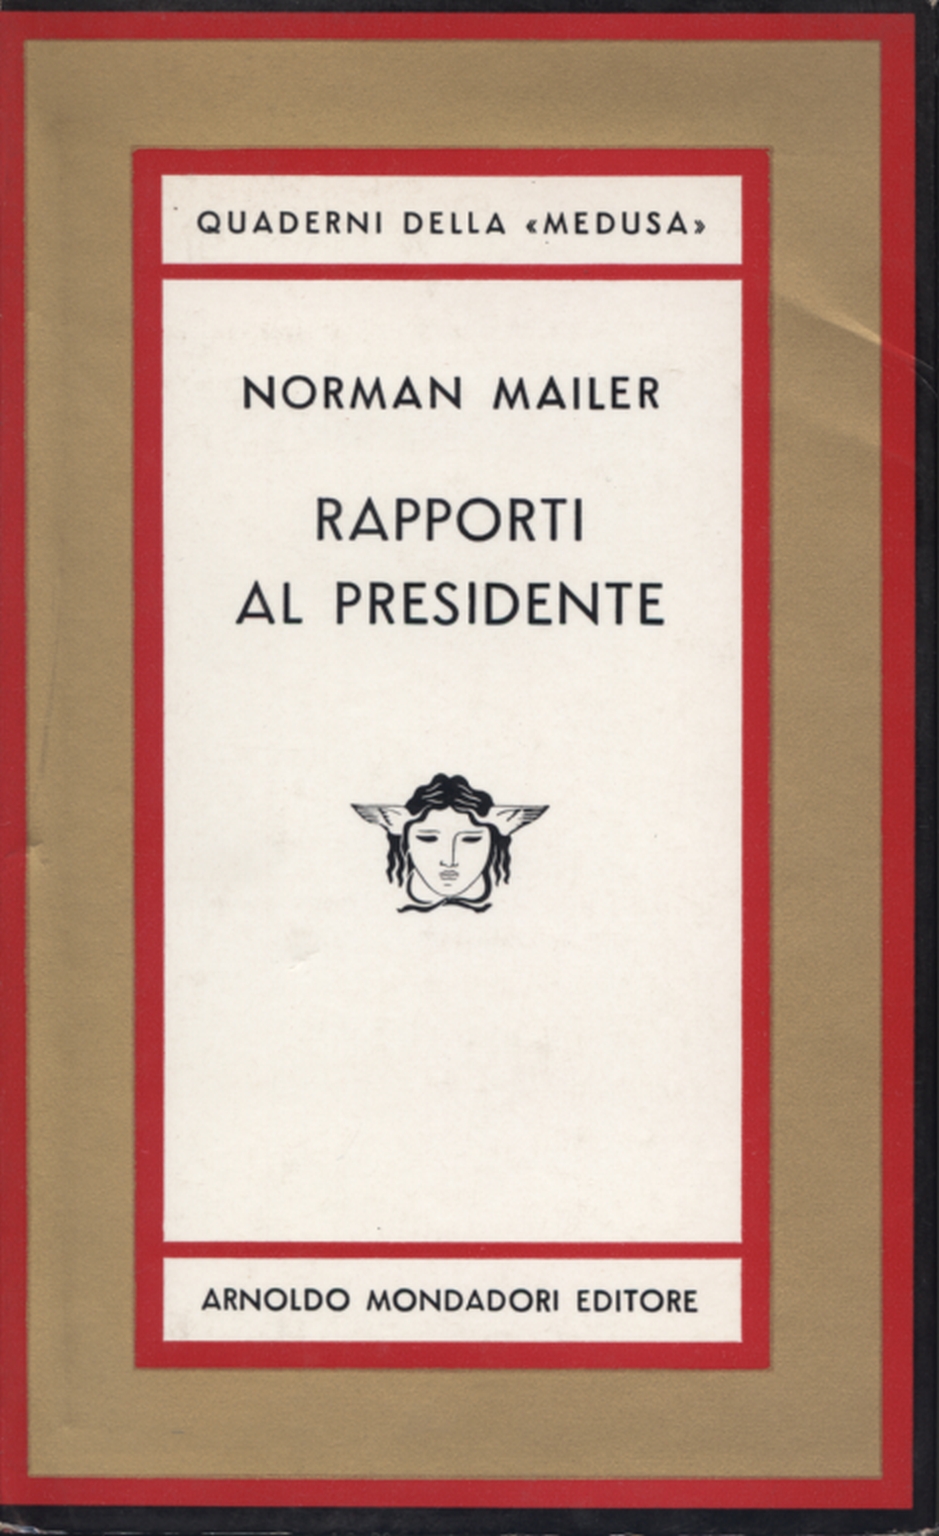 Rapporti al presidente, Norman Mailer